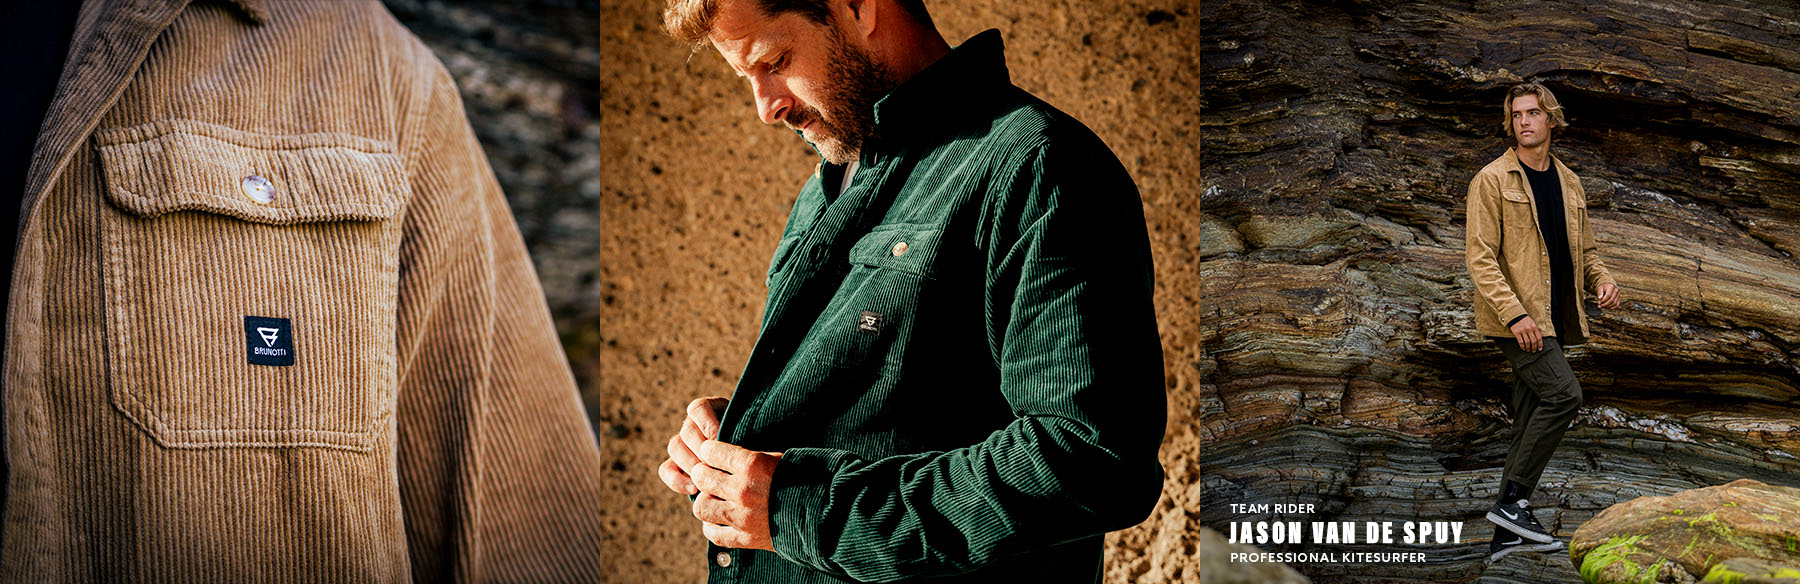 Corduroy shirts en overhemden met Brunoti logo gedragen door heren in de kleur groen en bruin. Als jas of als shirt voor tijdens een wandeling.